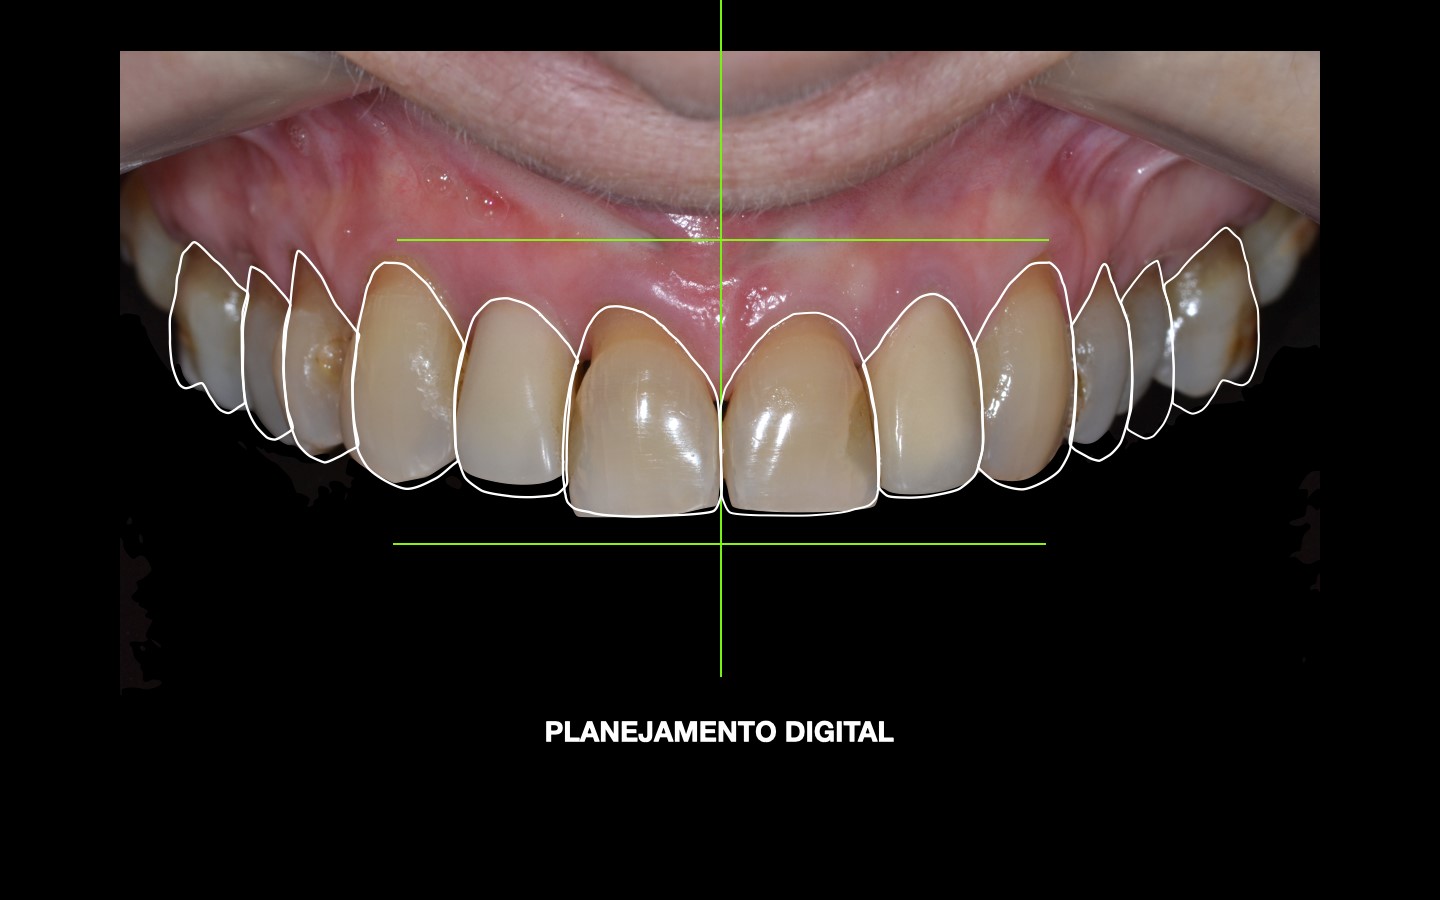 image20 - Reabilitação dento-alveolar com implante Arcsys, enxerto conjuntivo e substituto ósseo Nanosynt